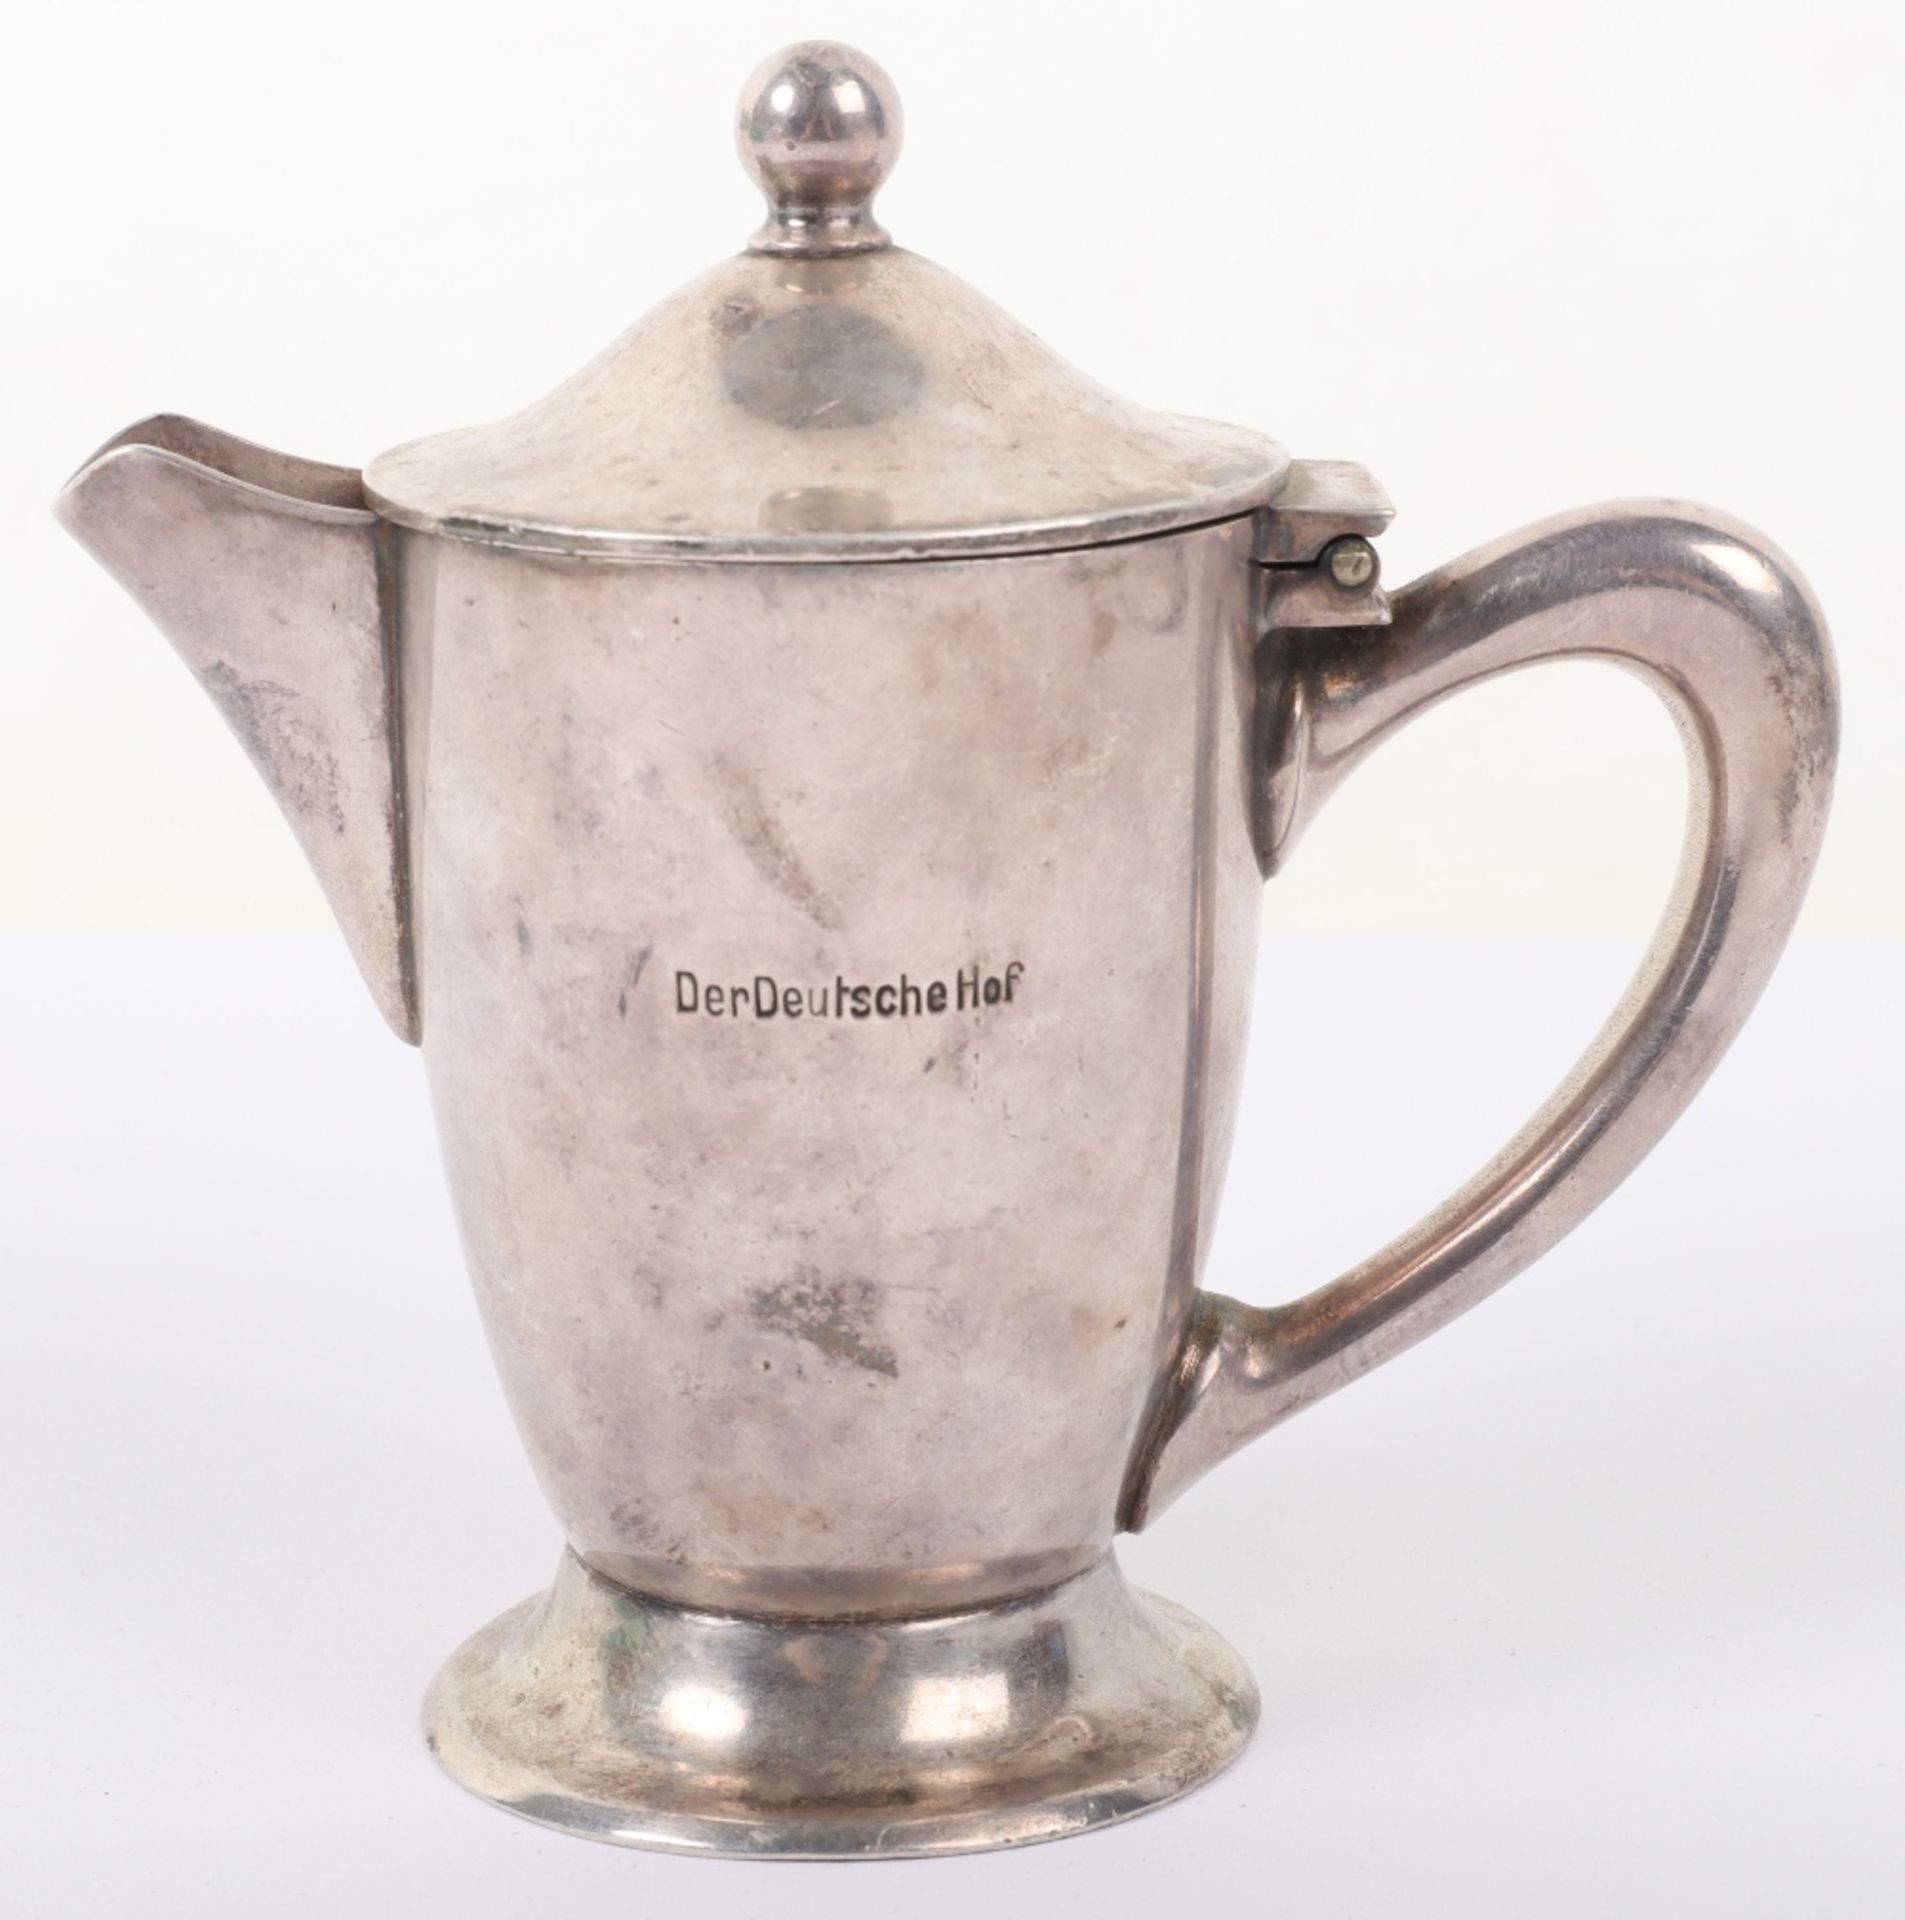 Third Reich Der Deutsche Hof Hotel Formal Tableware Silver Plated Single Cup Coffee Pot